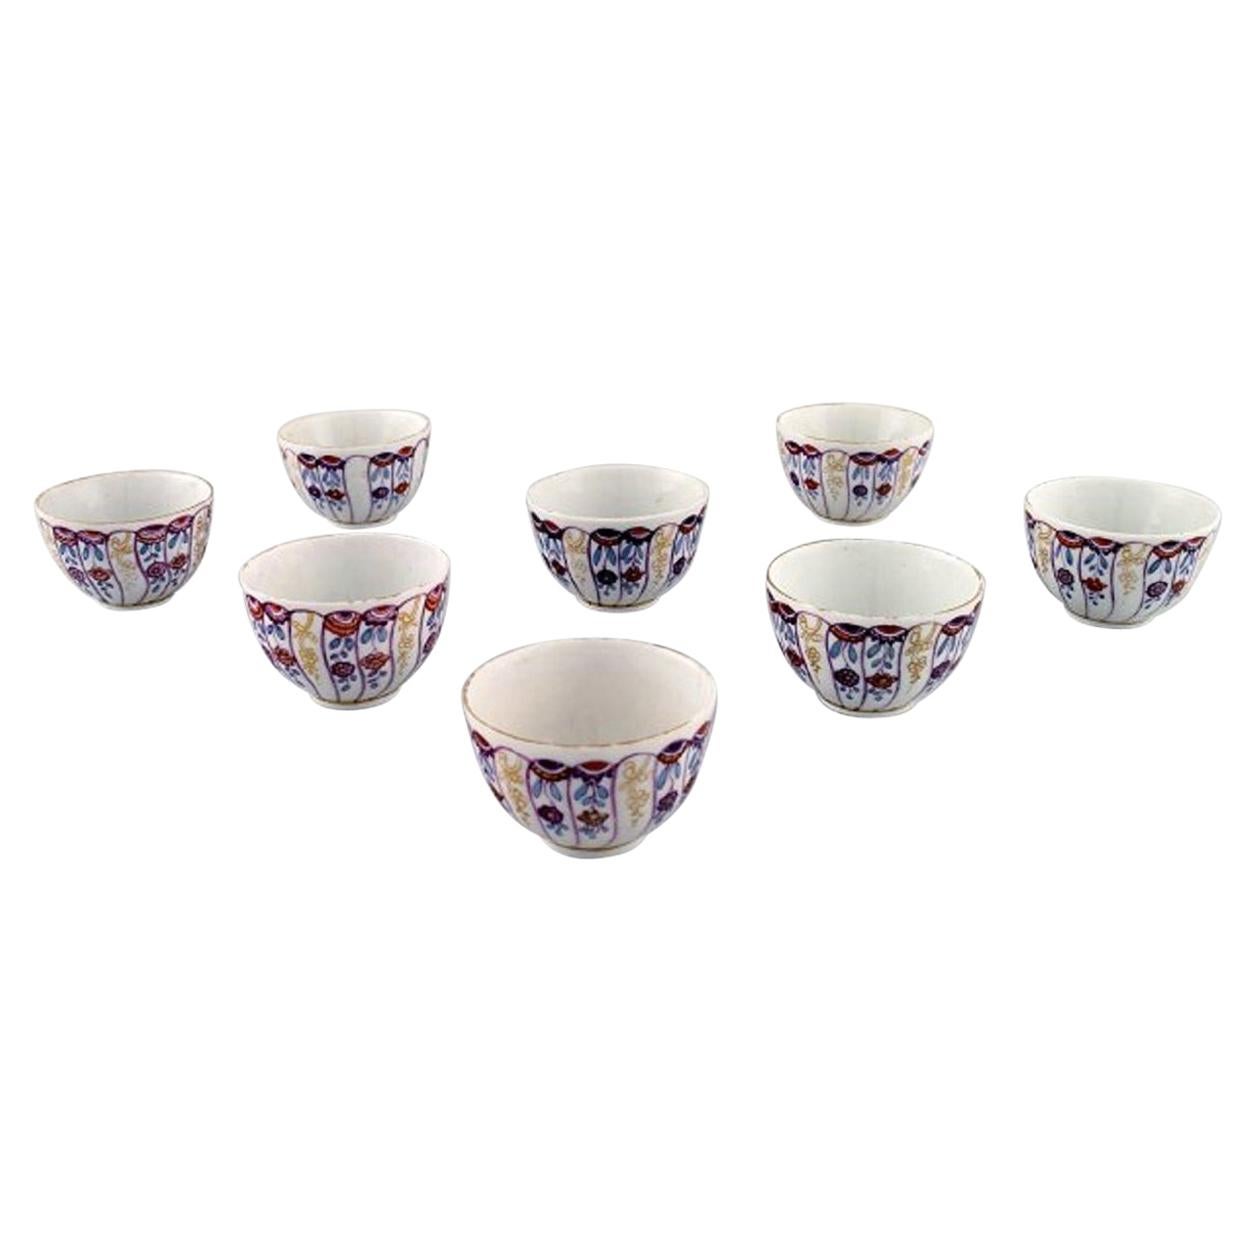 Neuf tasses anciennes et rares de Royal Copenhagen en porcelaine peinte à la main